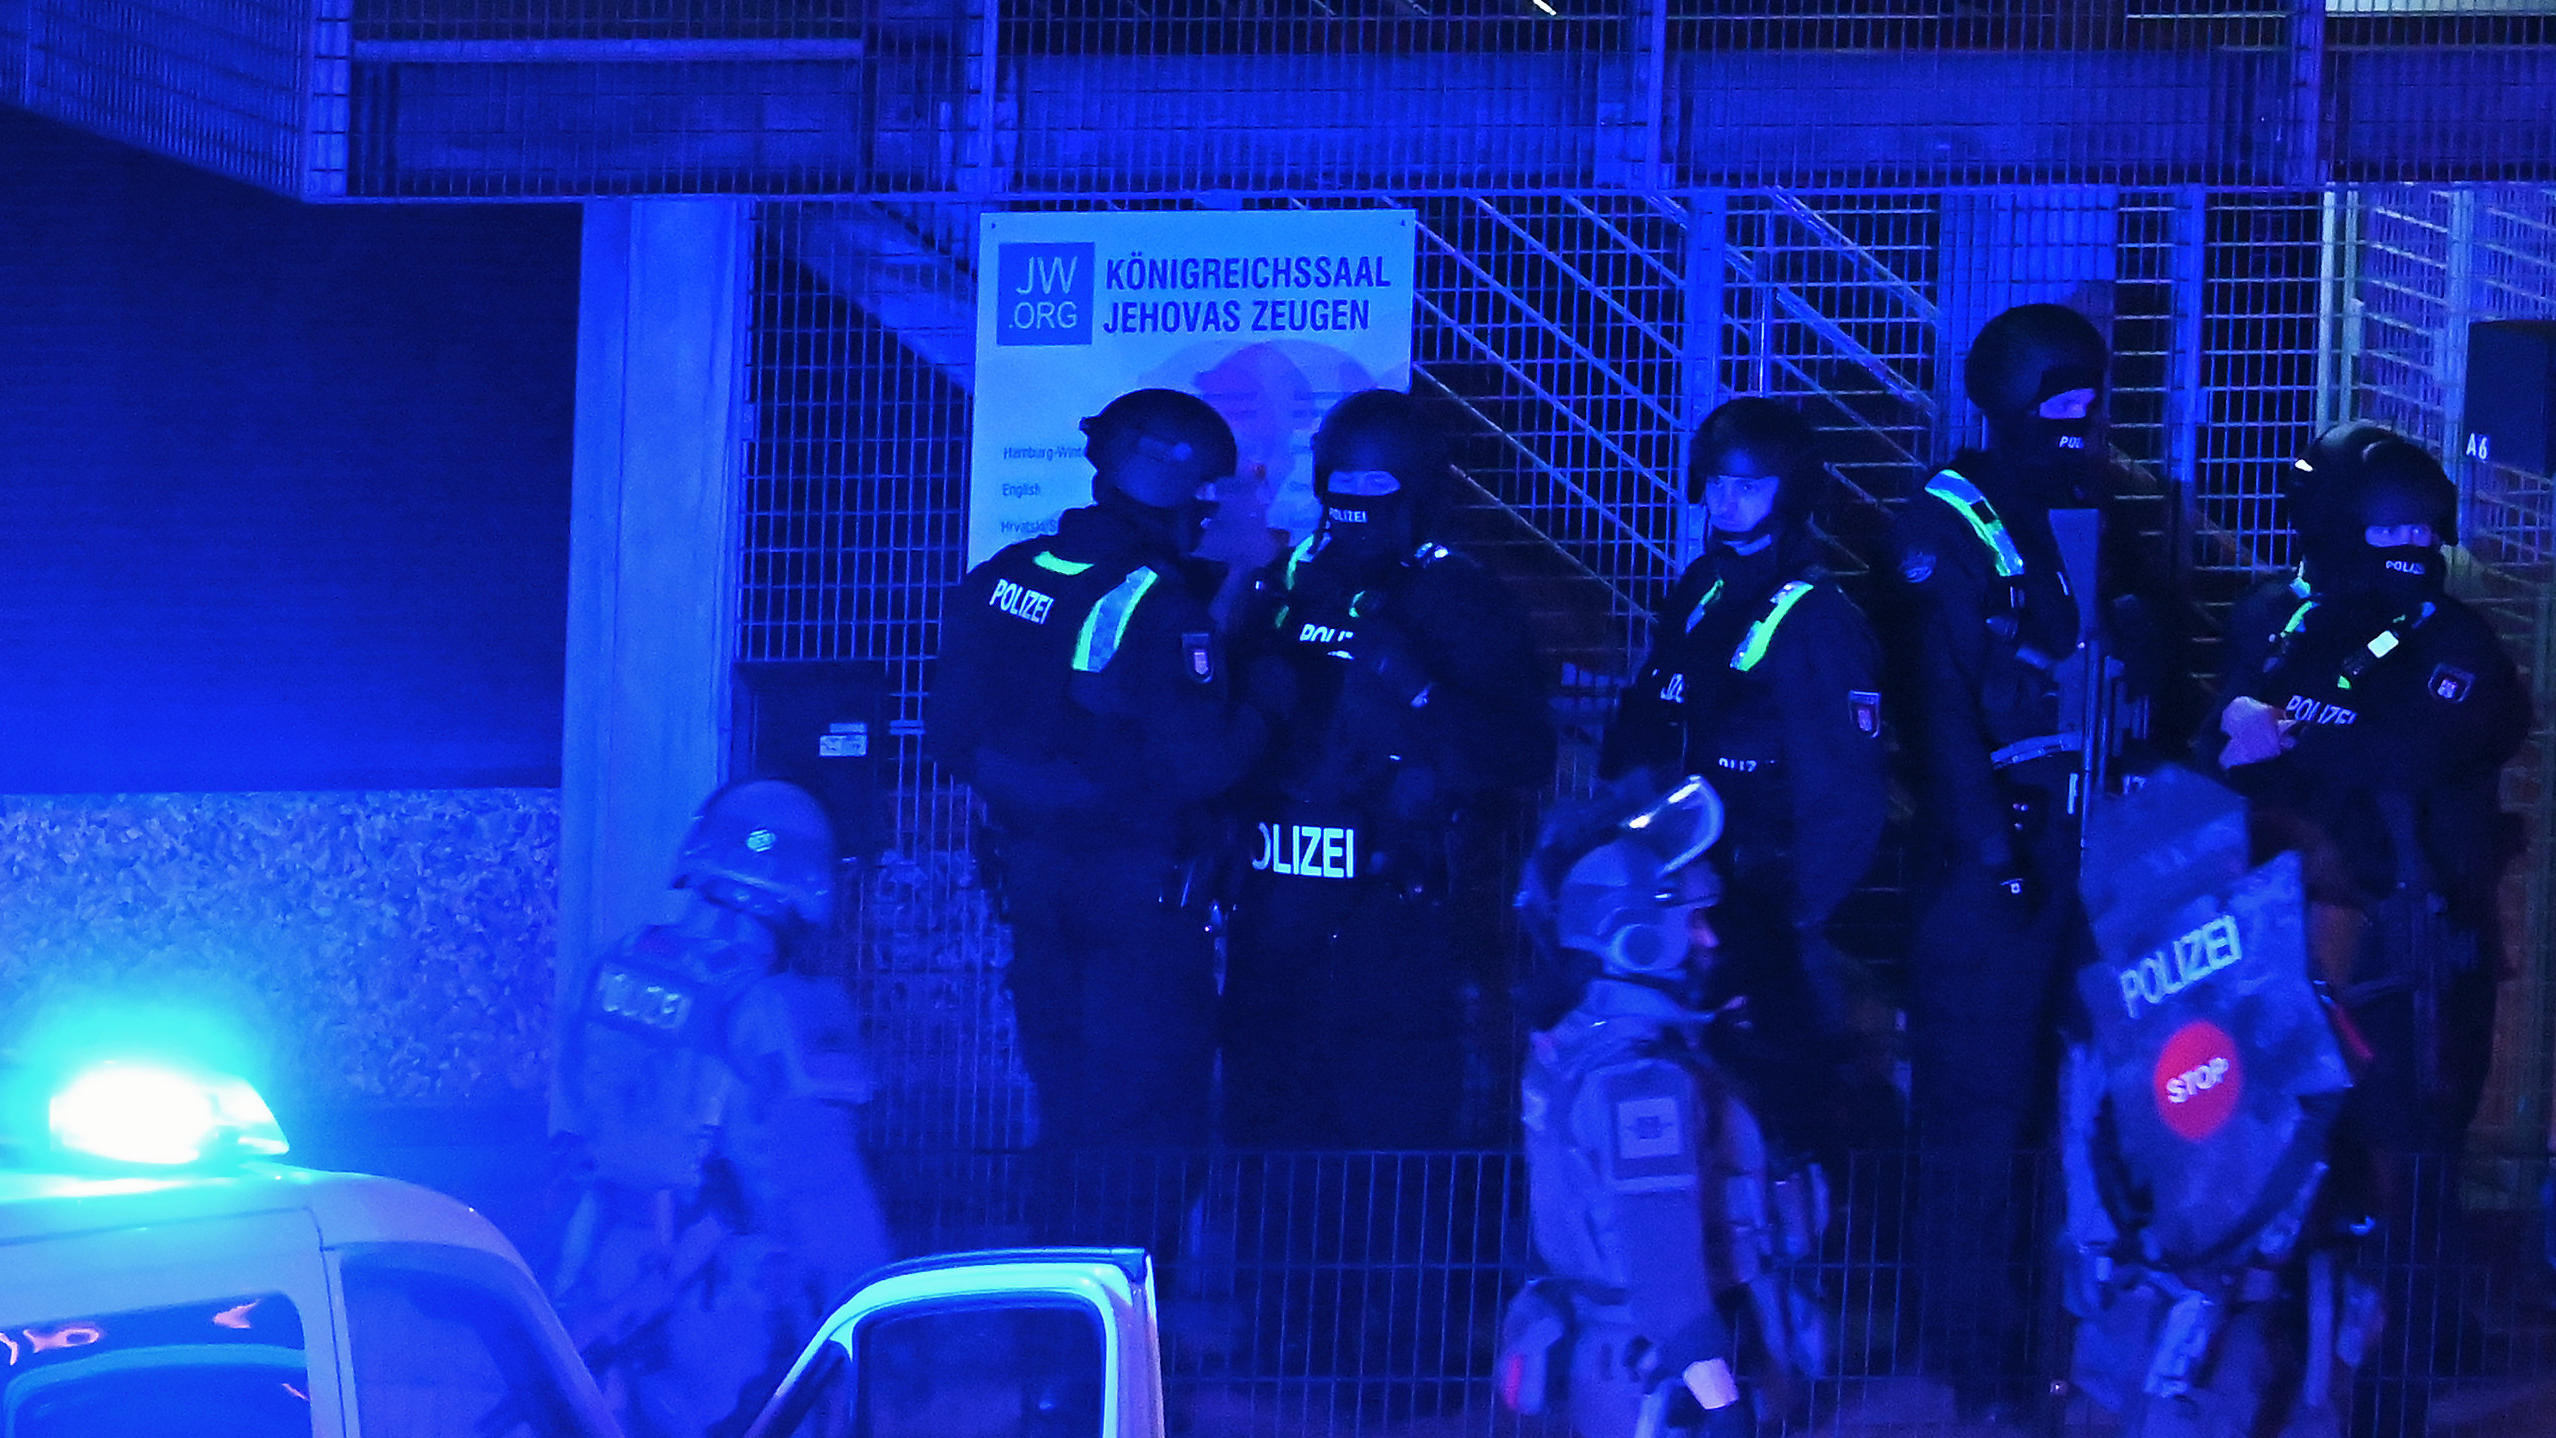 09.03.2023, Hamburg: Polizisten sind in Hamburg im Einsatz und stehen vor einem Schild mit der Aufschrift "Königreichssaal Jehovas Zeugen". Bei Schüssen sind am Donnerstagabend mehrere Menschen getötet und einige Personen verletzt worden.